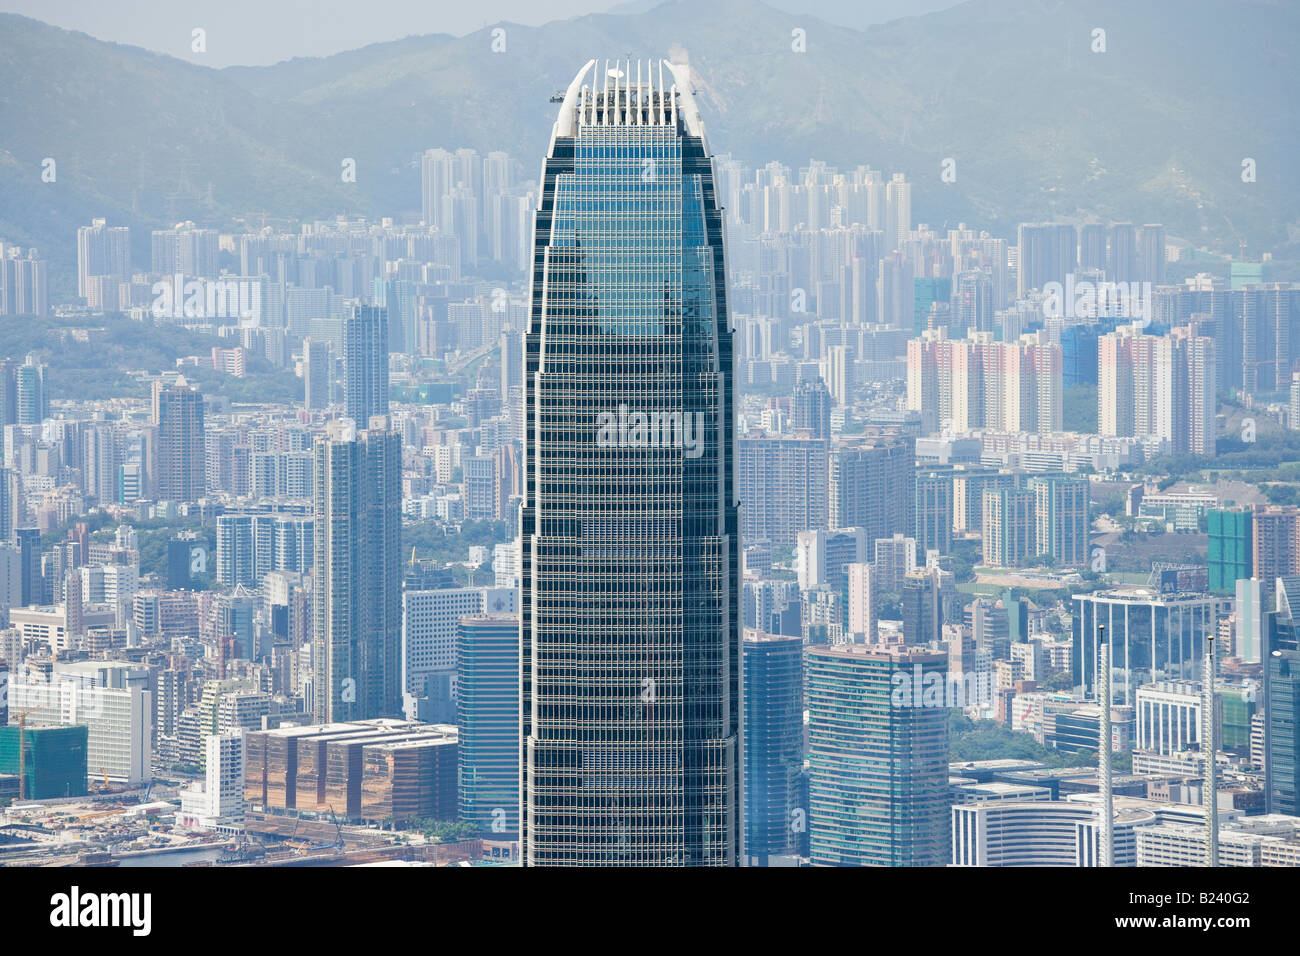 Zwei International Finance Centre IFC2, Hong Kong, China SAR. Bis 2010 die höchsten Wolkenkratzer in Hongkong. Kowloon im Hintergrund. Stockfoto